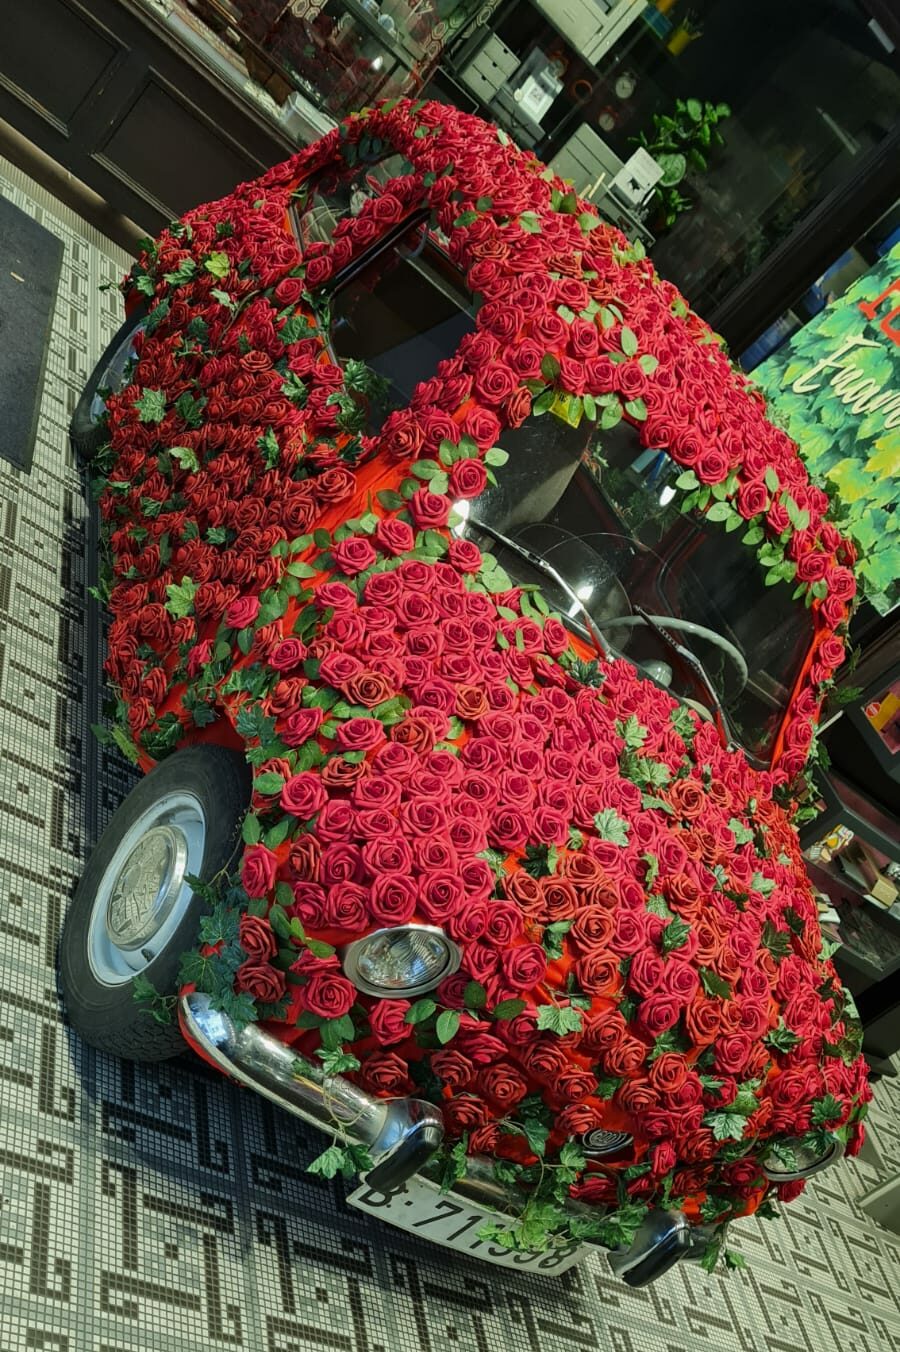 La macchina fiorita